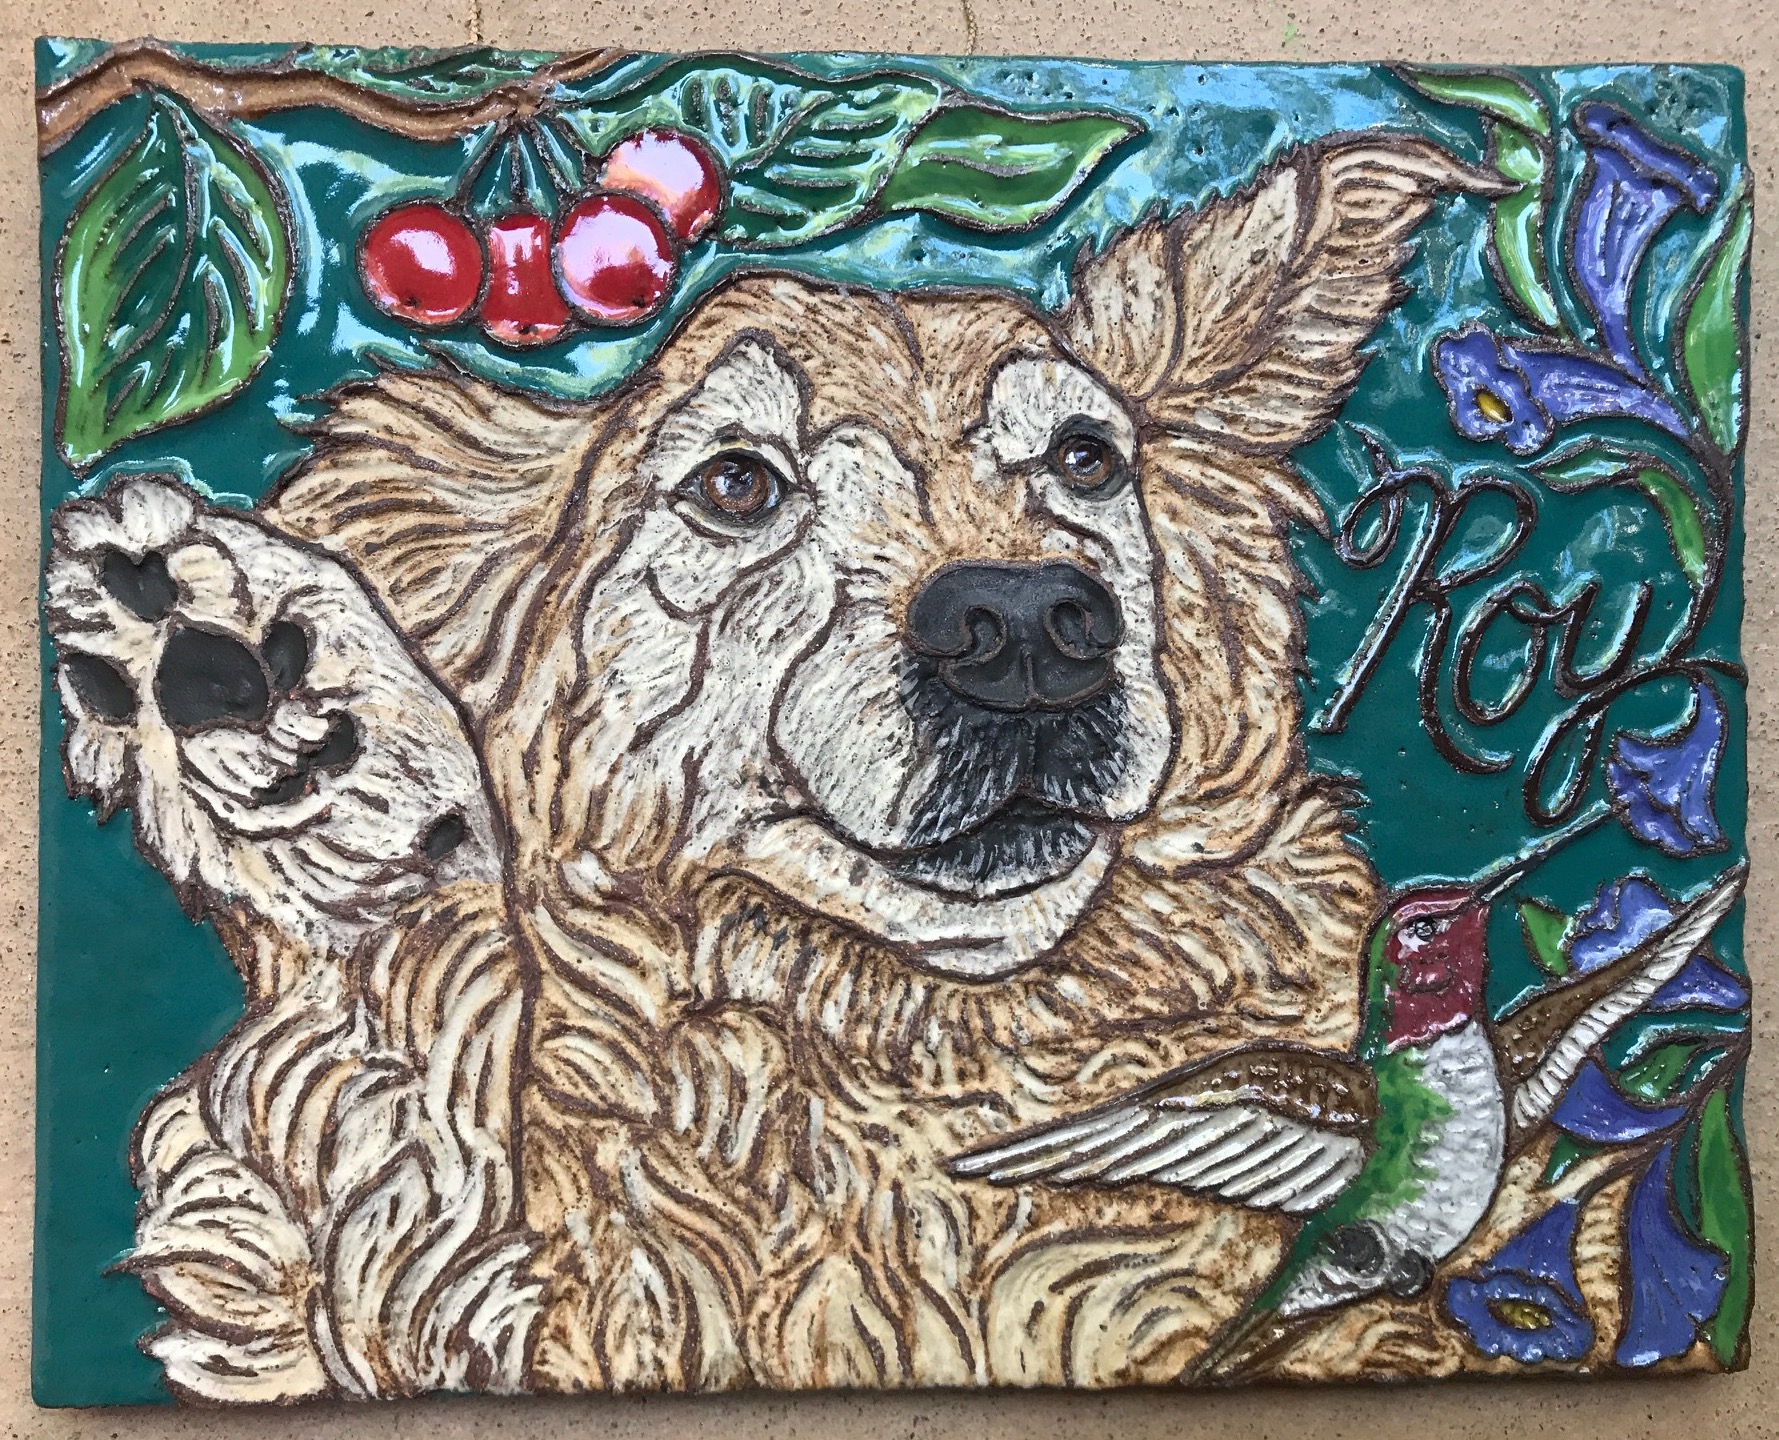 Colorful Ceramic Memorial Tile for Beloved Dog Roy